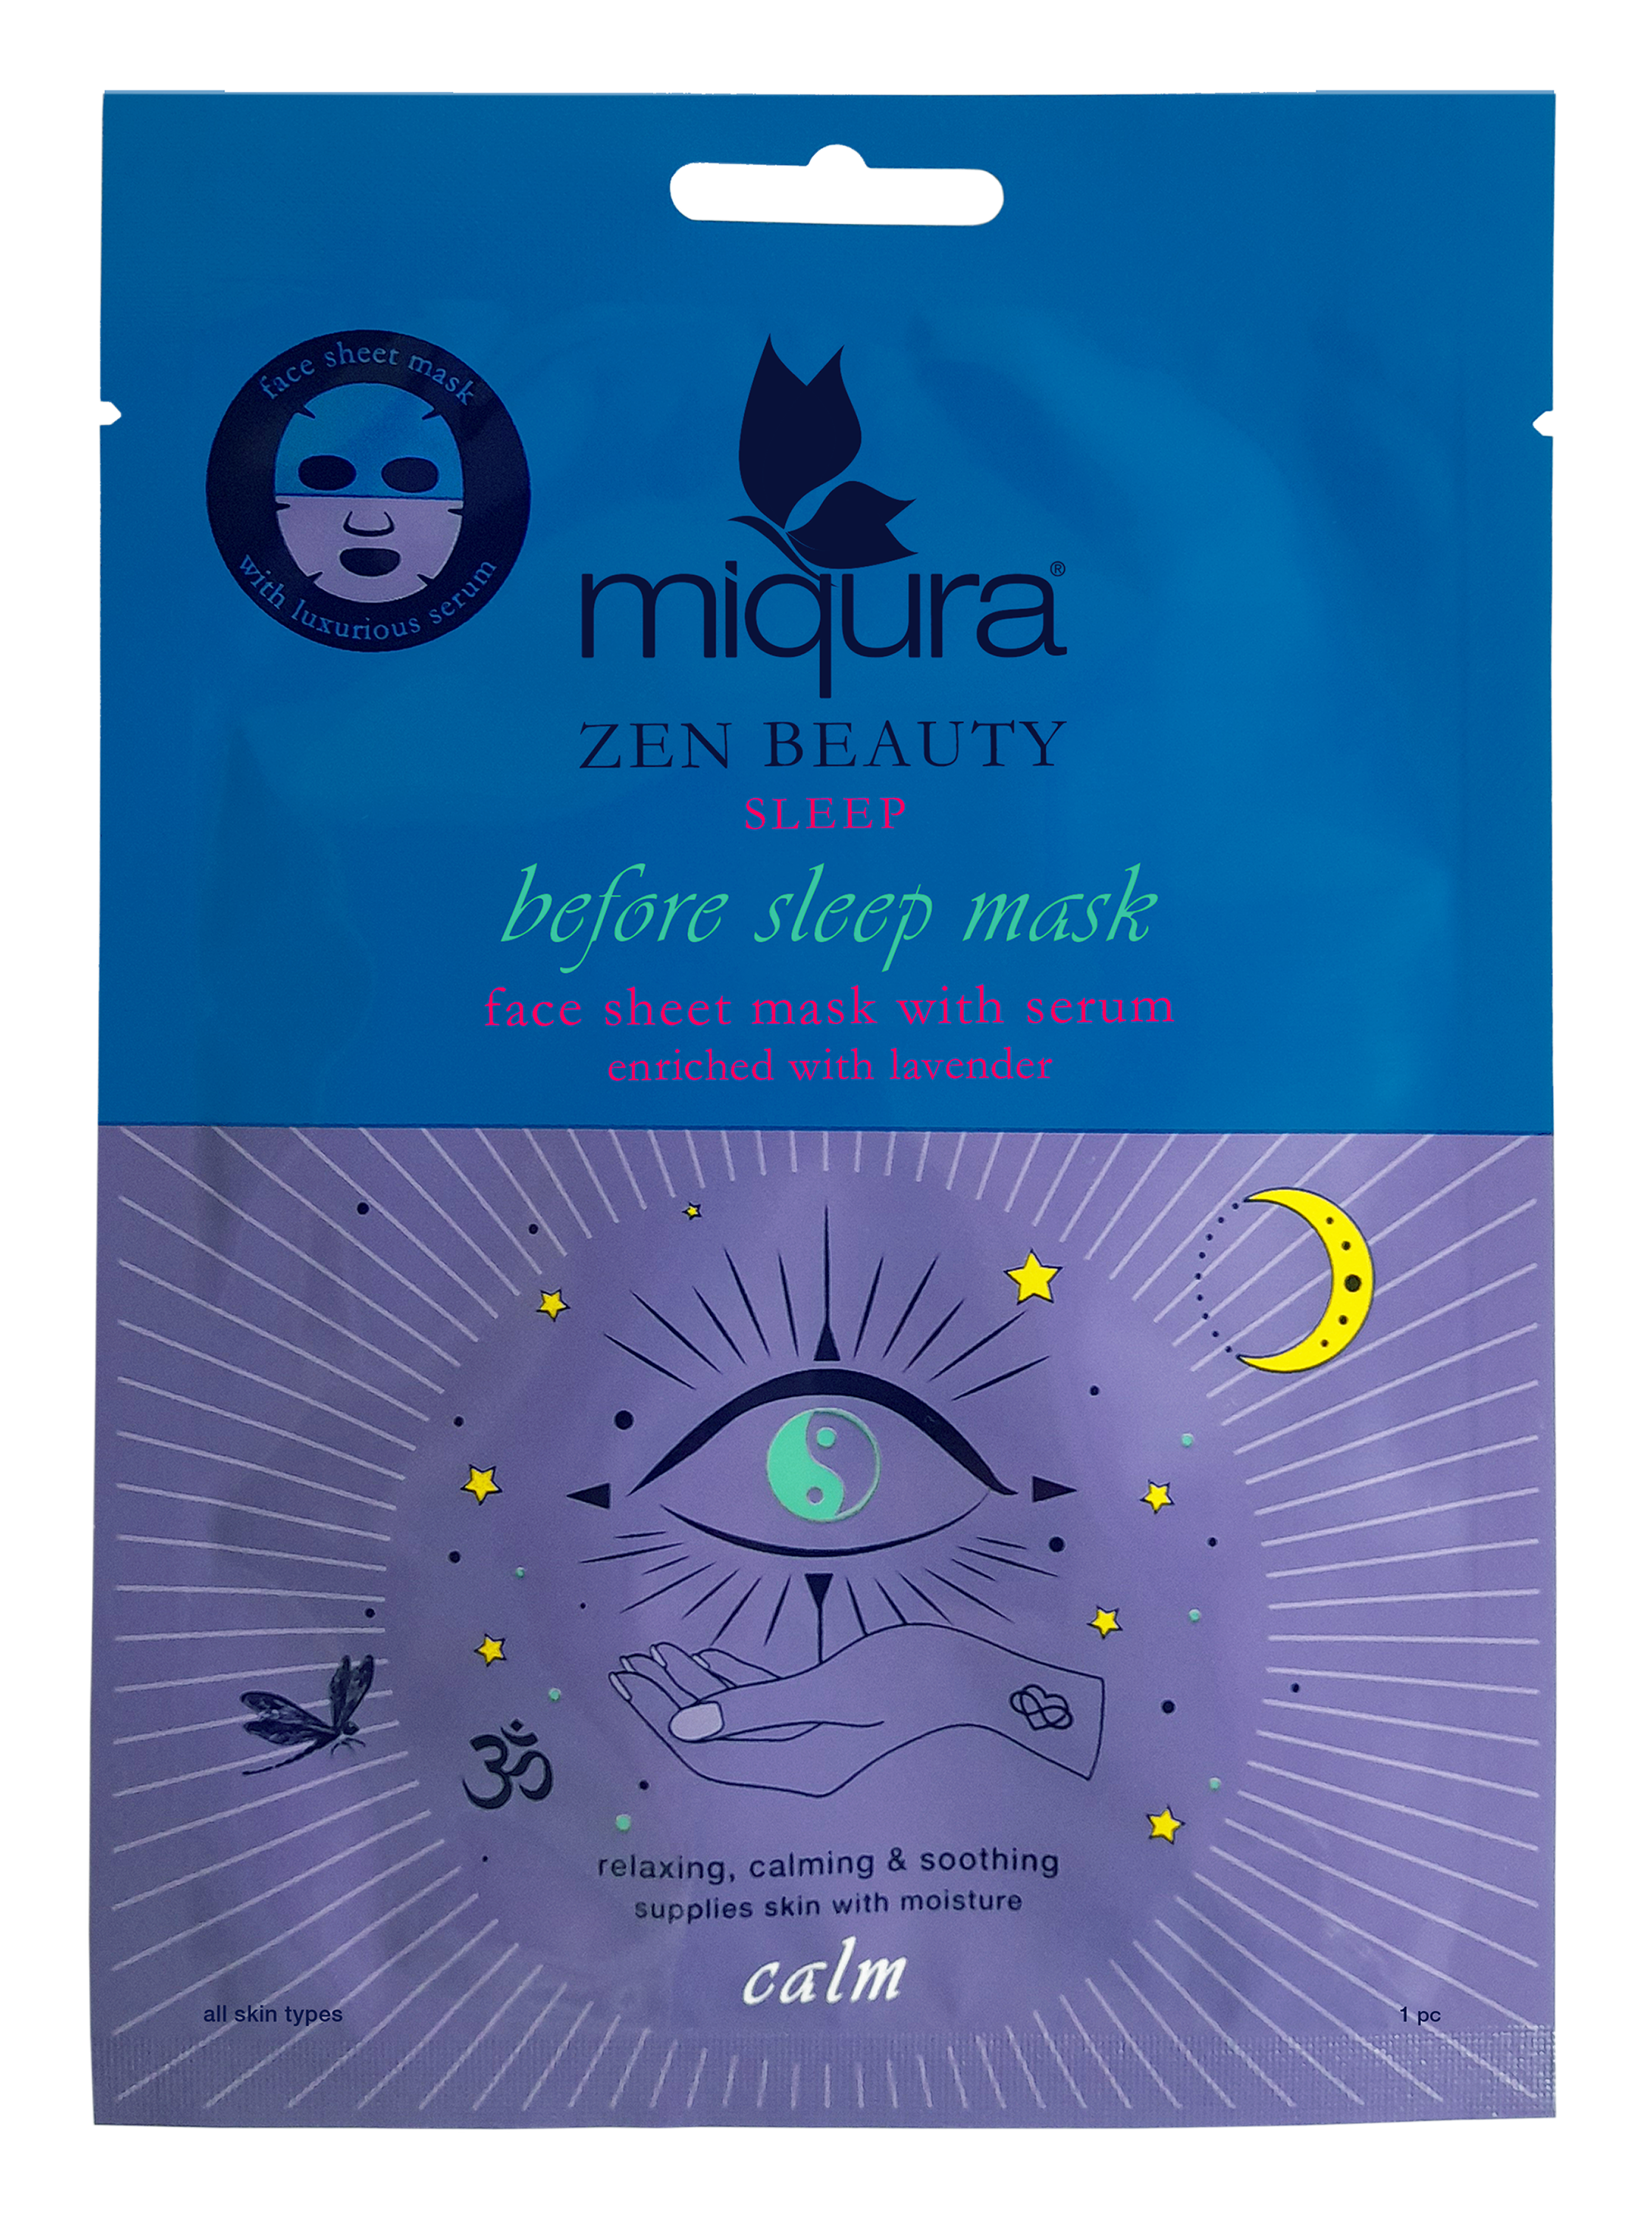 Billede af Zen Sleep Face Sheet Mask hos Miqura